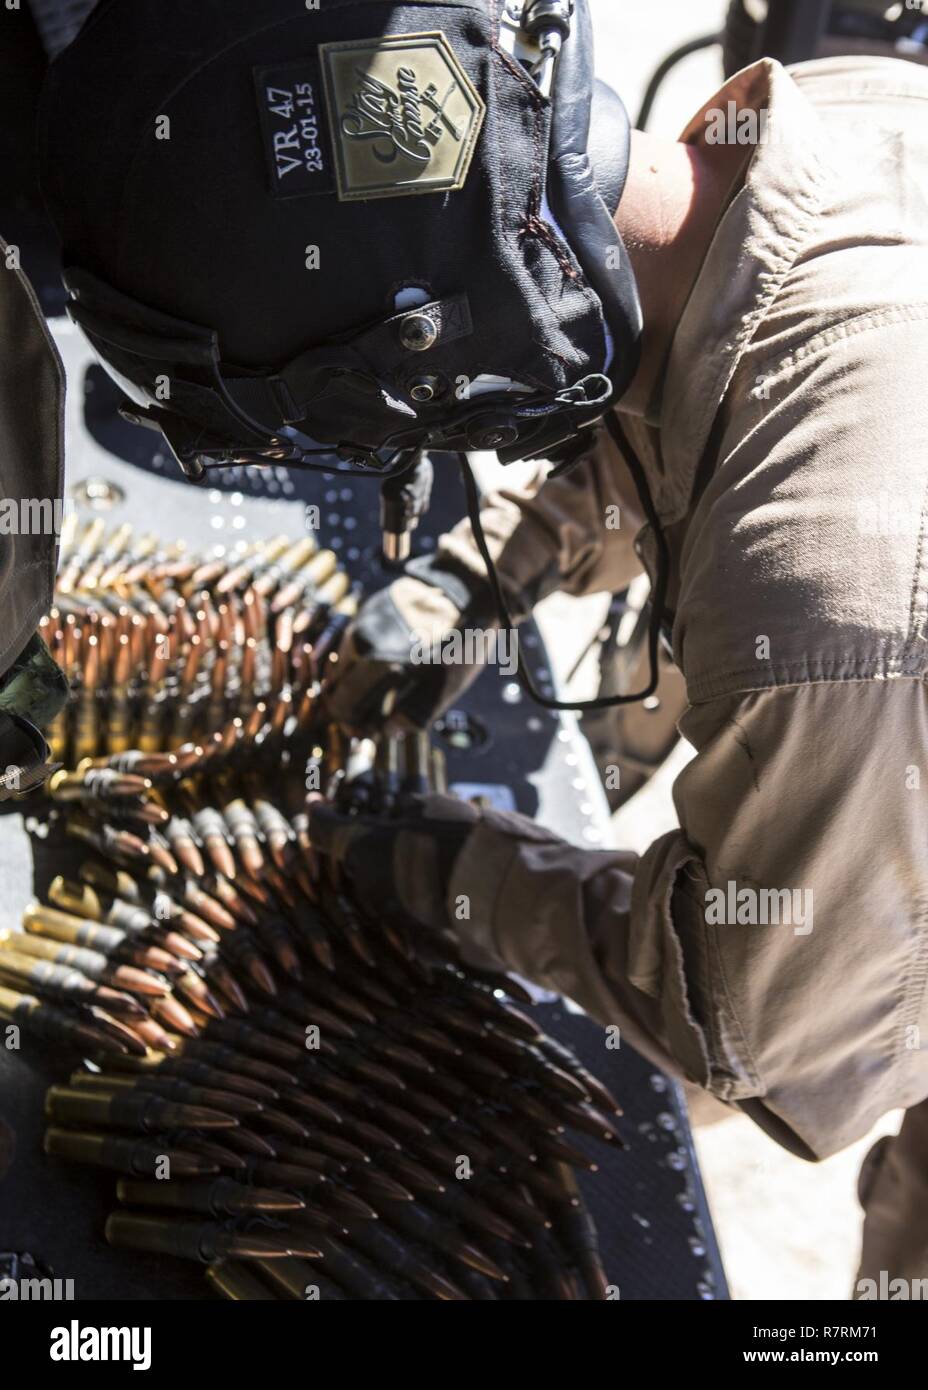 El Sargento de Infantería de Marina de los EE.UU. Paul Guillén, jefe de la tripulación con Luz Marina escuadrón de helicópteros de ataque restocks-169, su munición de artillería aérea durante un refinamiento en armas y tácticas curso de Instructor (WTI) 2-17, en chocolate Antena Montaña Tiro, California, 5 de abril de 2017. El WTI es un evento de capacitación de siete semanas organizado por la Aviación Marina armas y tácticas de escuadrón MAWTS Uno (cuadro 1), que enfatiza la integración operacional de las seis funciones de aviación del Cuerpo de Infantería de Marina en apoyo de una masa de aire marino Task Force y proporciona entrenamiento táctico avanzado estandarizado y la certificación de la unidad de instrumentos Foto de stock